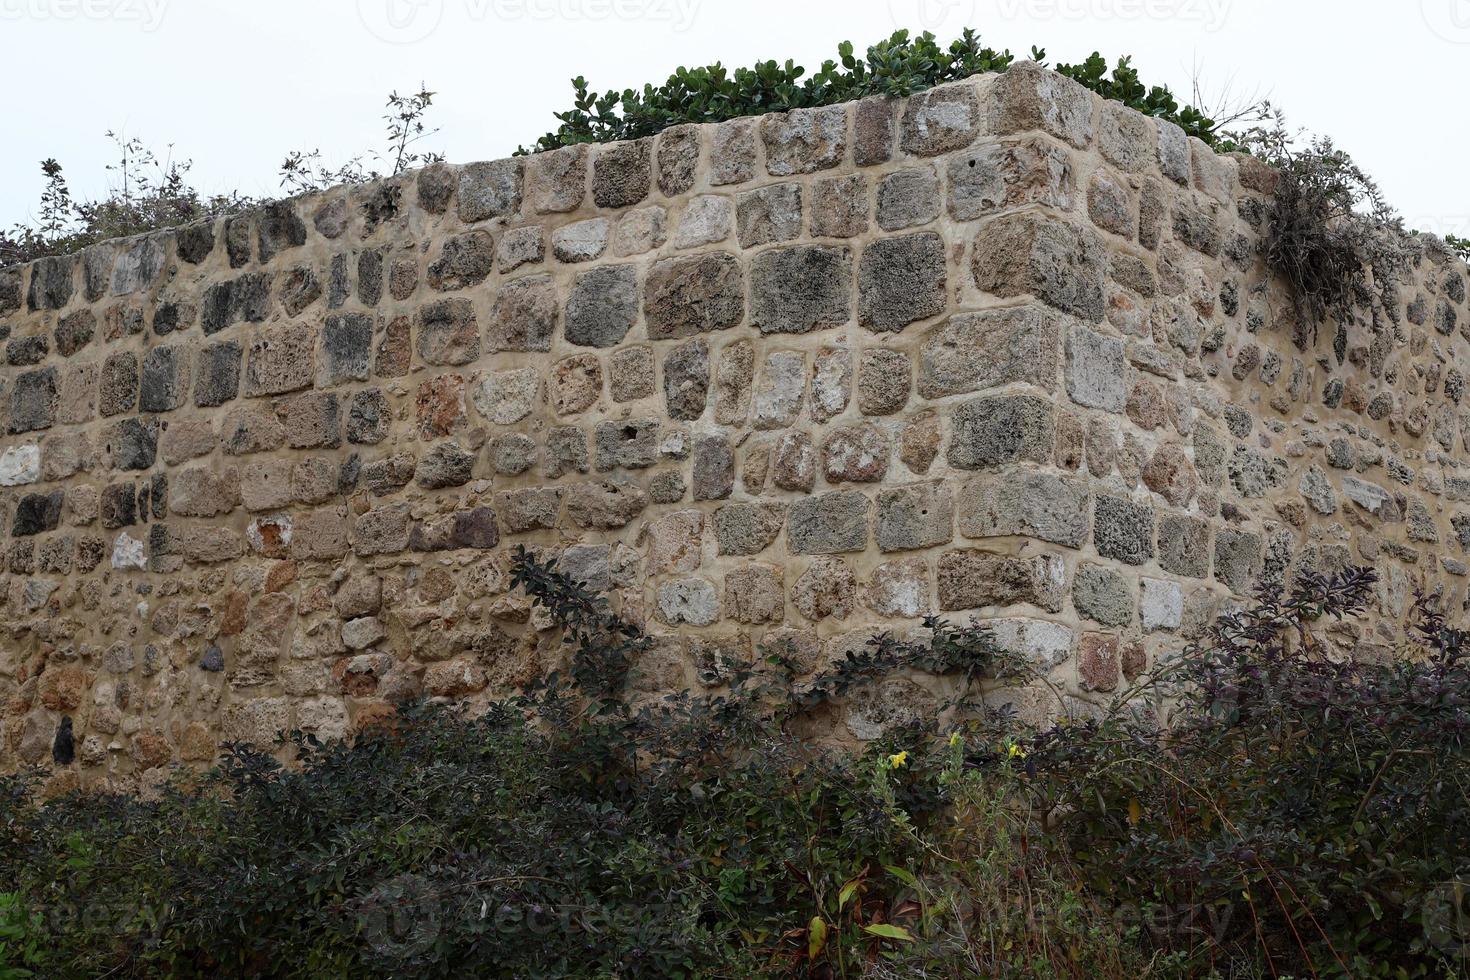 mur de pierre d'une ancienne forteresse au bord de la mer en israël. photo